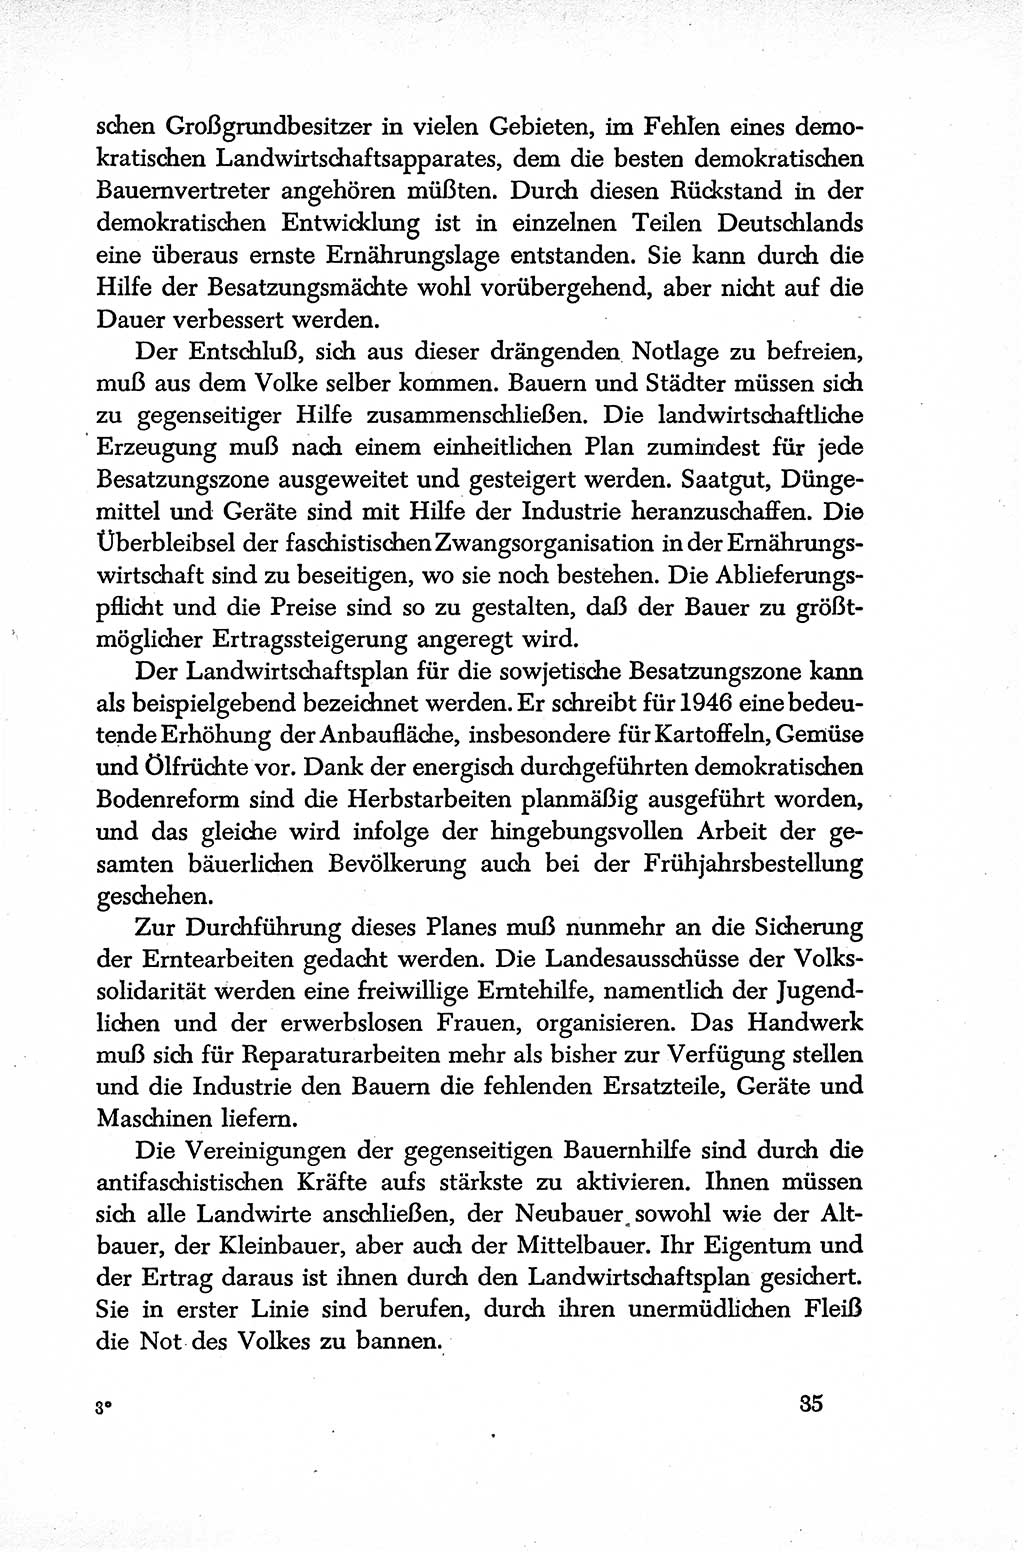 Dokumente der Sozialistischen Einheitspartei Deutschlands (SED) [Sowjetische Besatzungszone (SBZ) Deutschlands] 1946-1948, Seite 35 (Dok. SED SBZ Dtl. 1946-1948, S. 35)